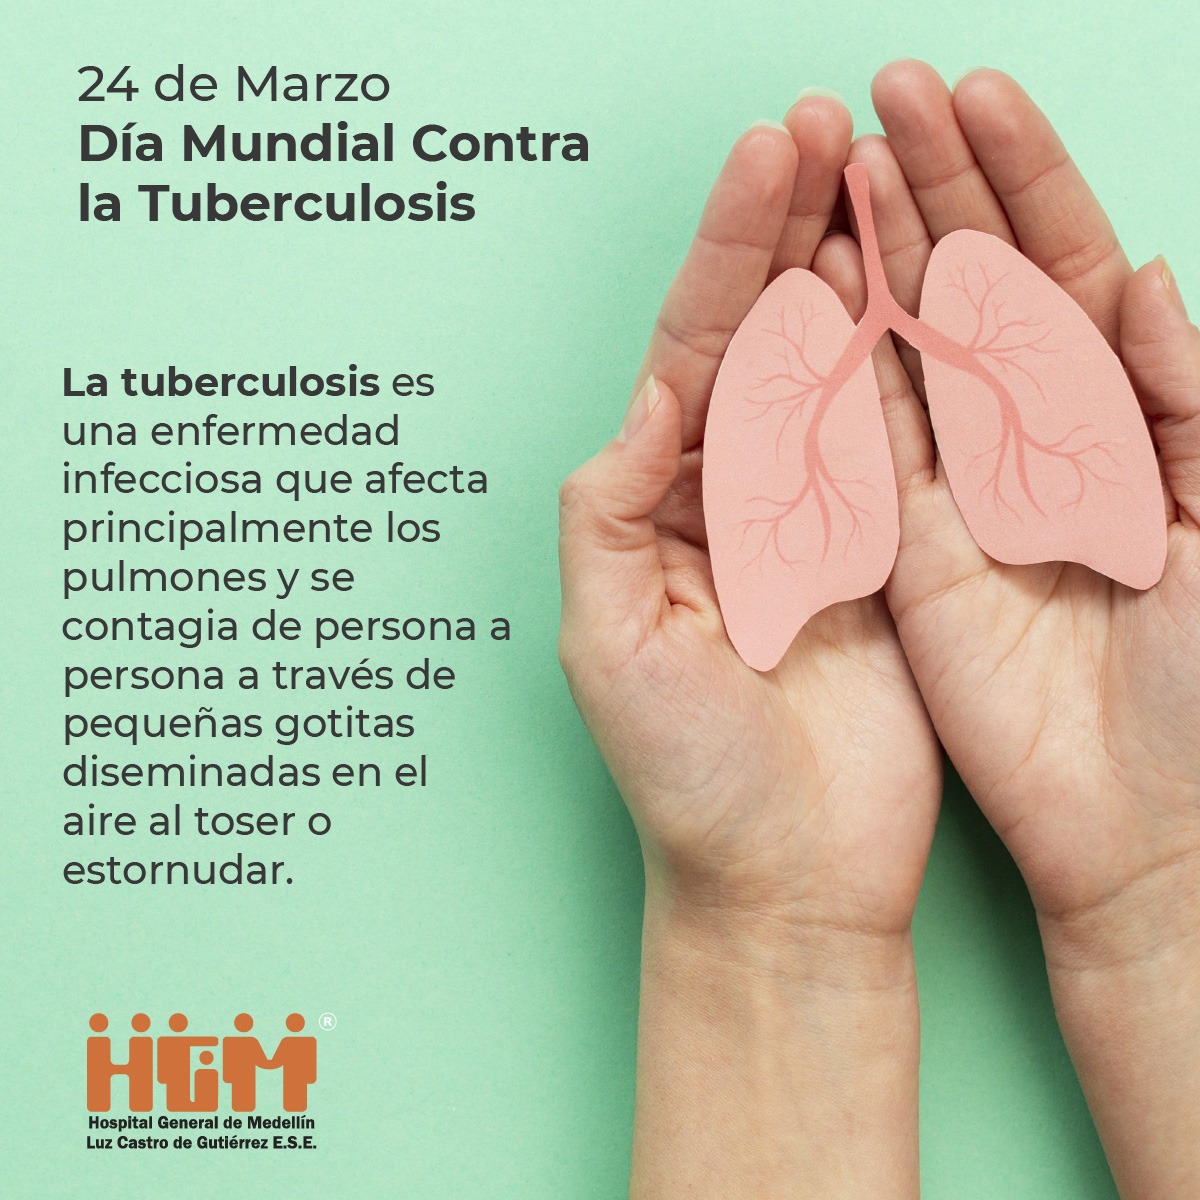 24 de Marzo Día Mundial Contra la Tuberculosis